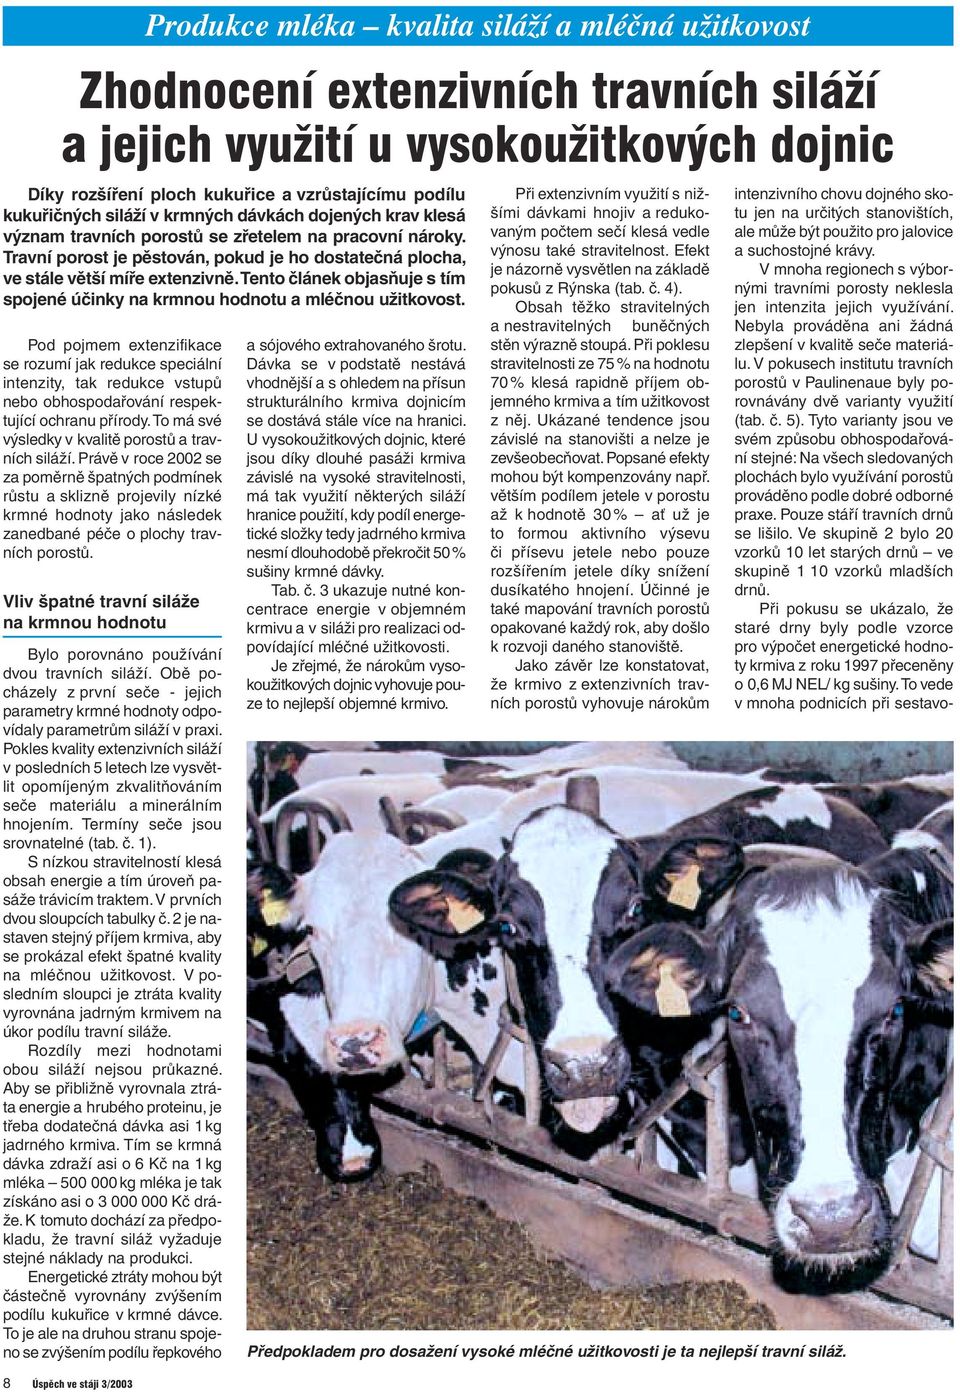 8 Úspěch ve stáji 3/2003 Produkce mléka kvalita siláží a mléčná užitkovost Zhodnocení extenzivních travních siláží a jejich využití u vysokoužitkových dojnic Pod pojmem extenzifikace se rozumí jak